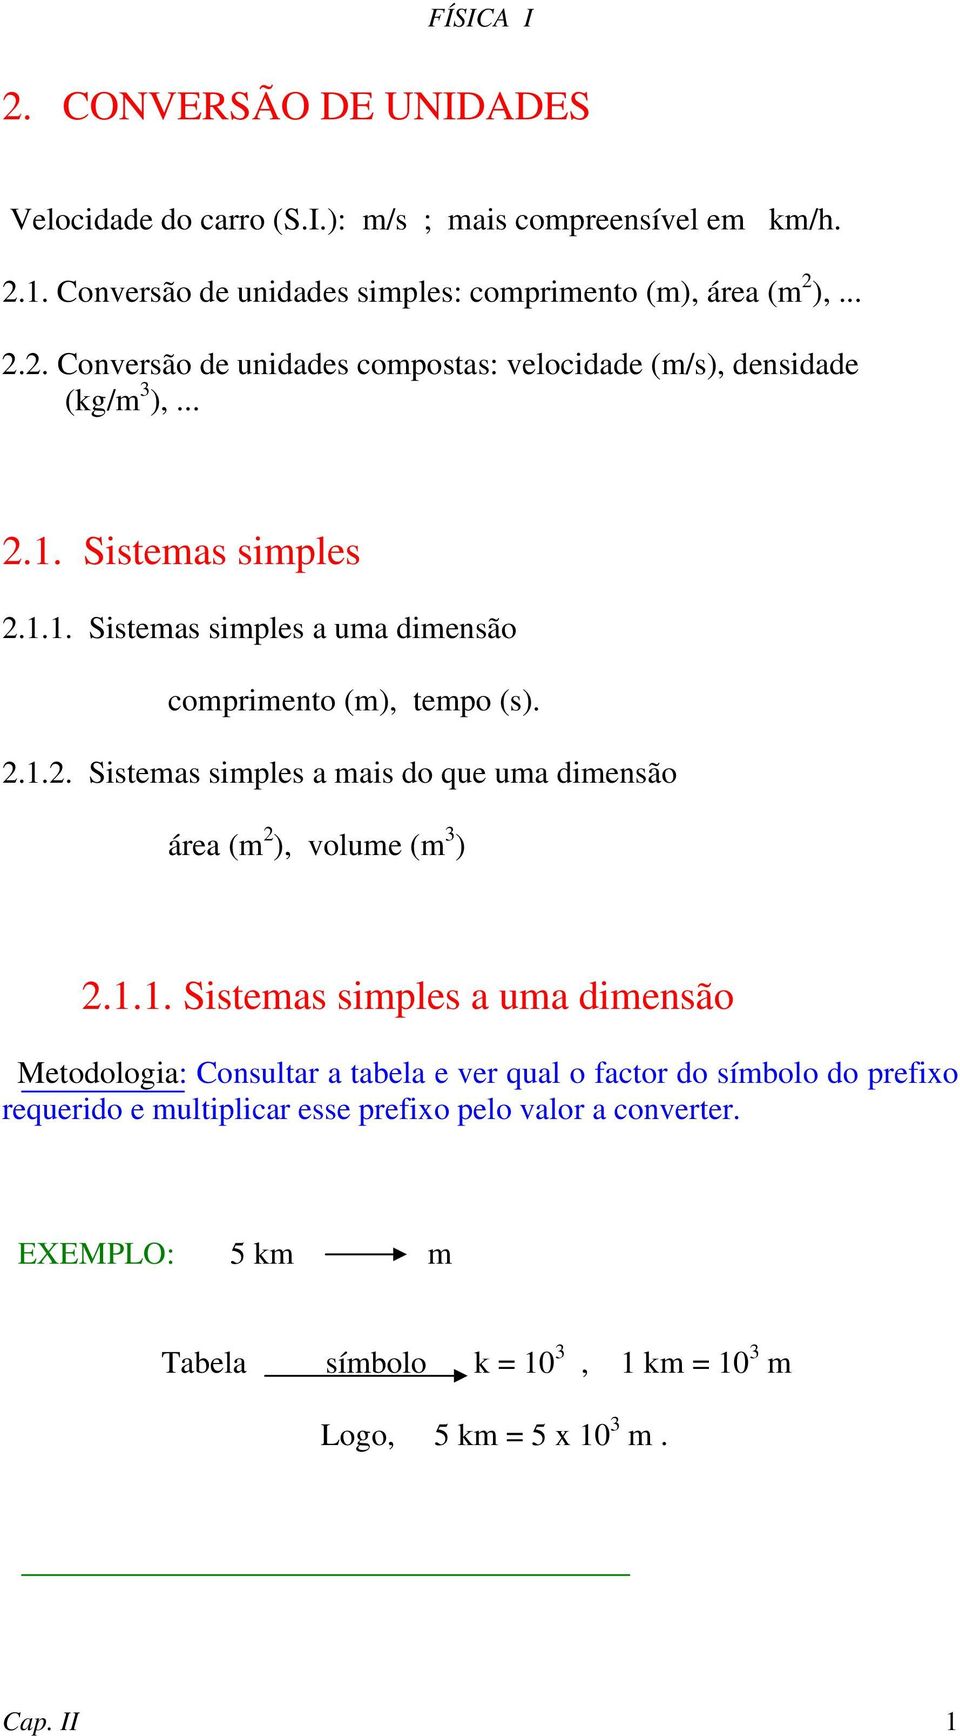 1.1. Sistemas simples a uma dimensão Metodologia: Consultar a tabela e ver qual o factor do símbolo do prefixo requerido e multiplicar esse prefixo pelo valor a